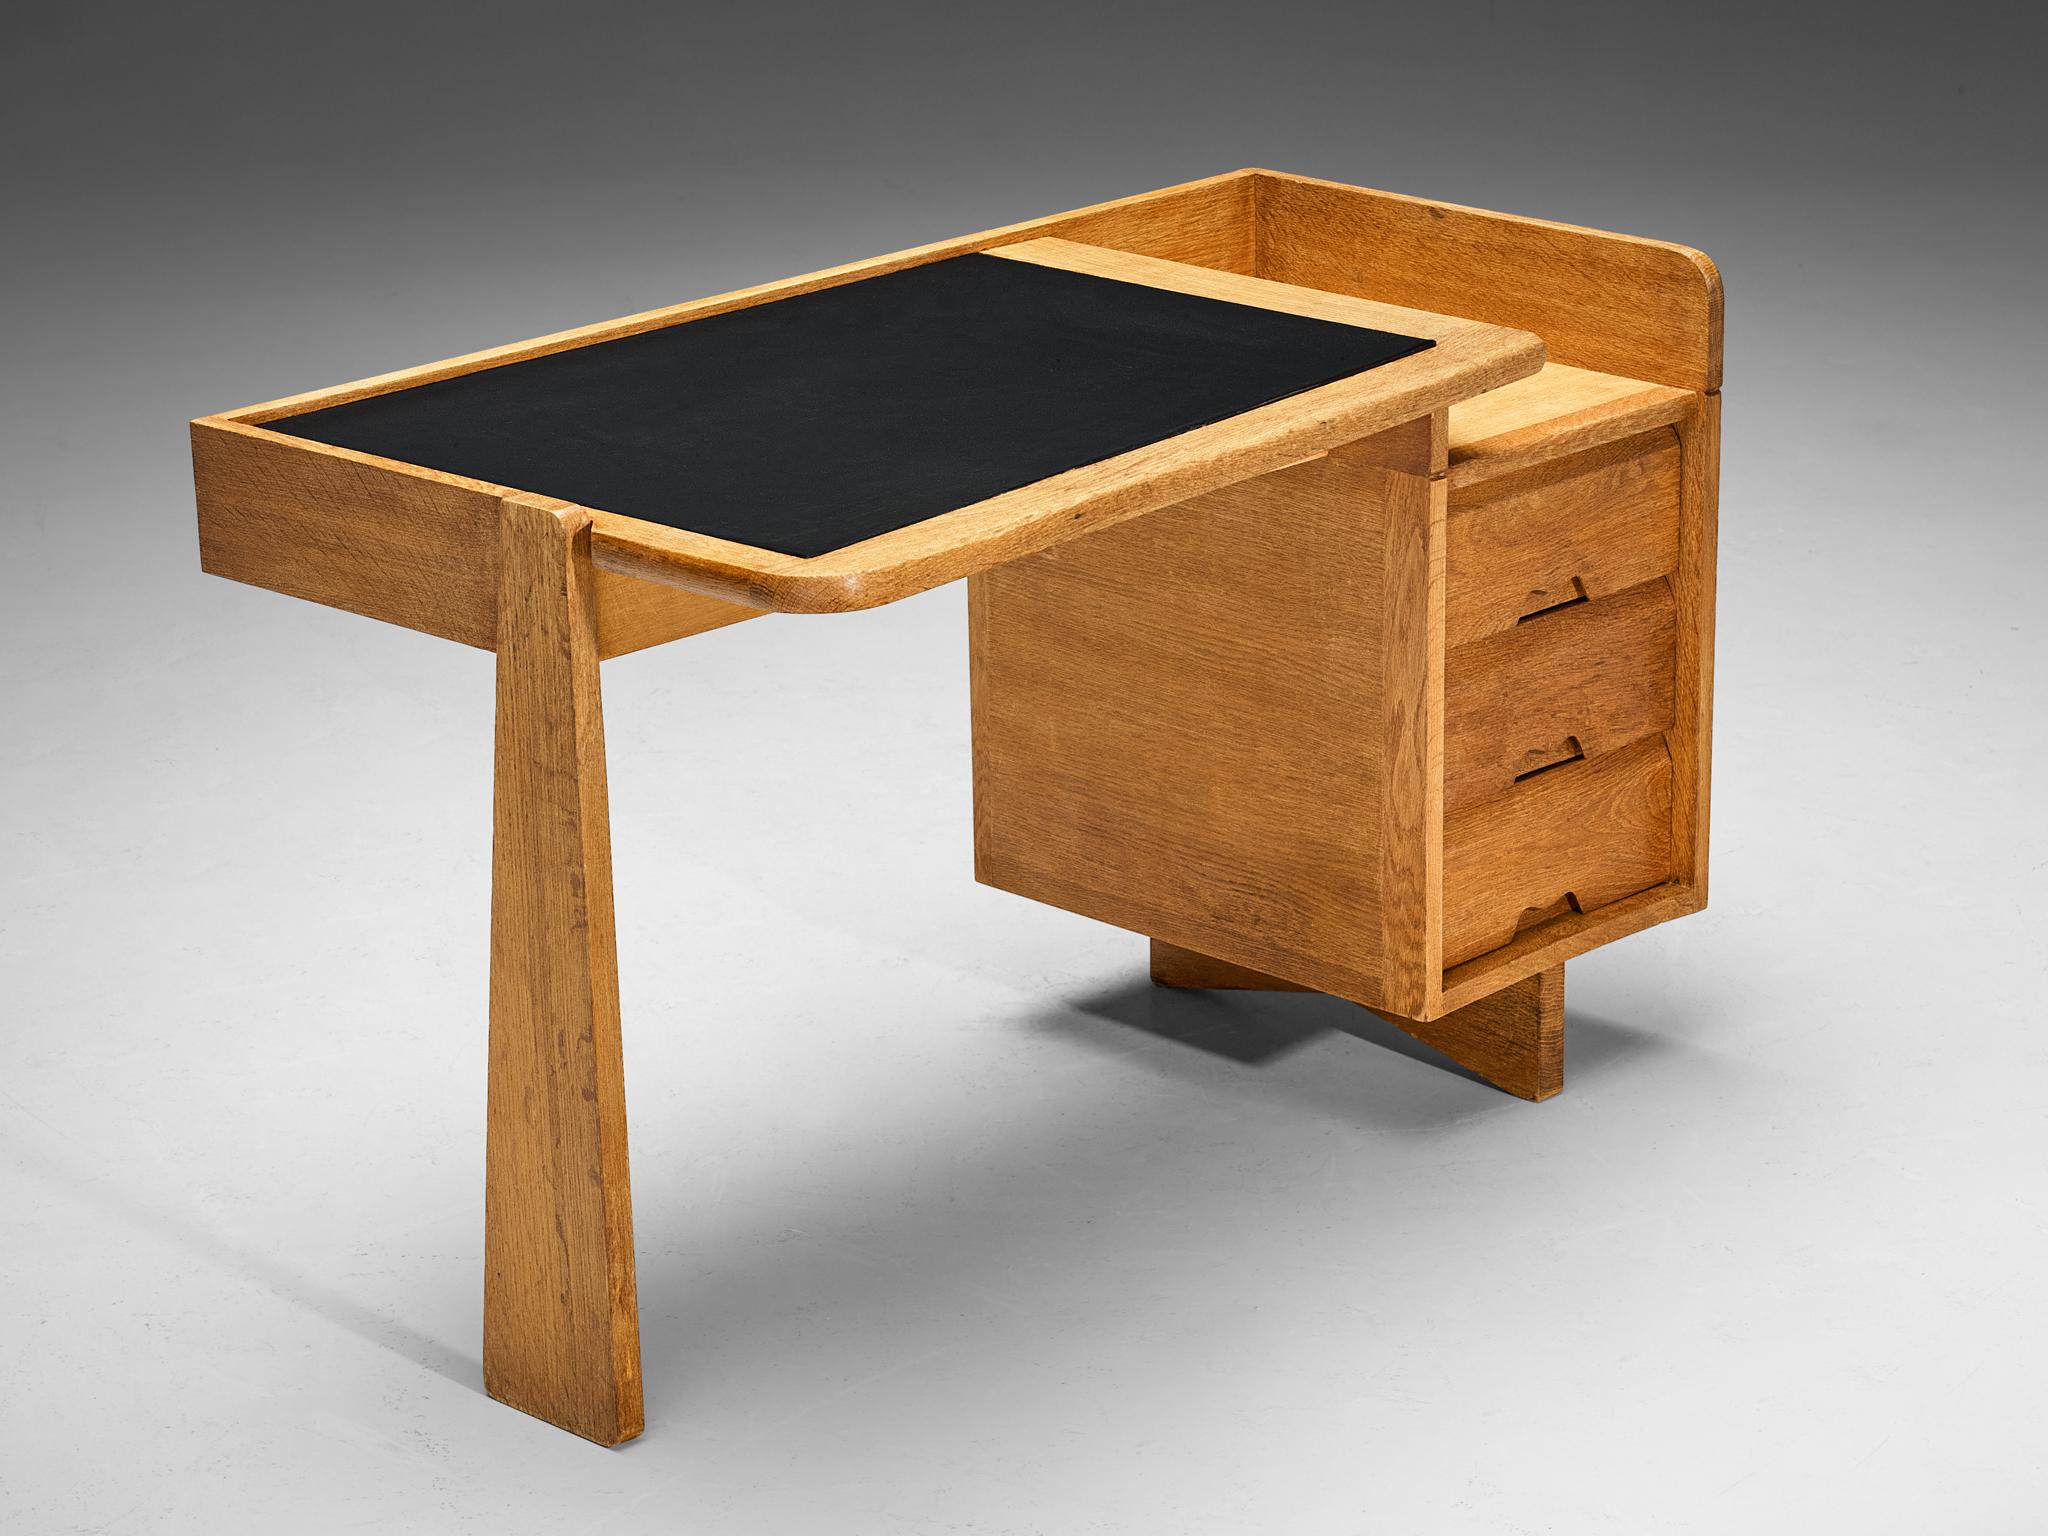 Guillerme et Chambron für Votre Maison, Schreibtisch, Eiche, Leder, Frankreich, 1960er Jahre.

Dieser Schreibtisch ist ein Entwurf des renommierten französischen Duos Guillerme et Chambron. Dieser Entwurf zeichnet sich durch eine äußerst ausgewogene